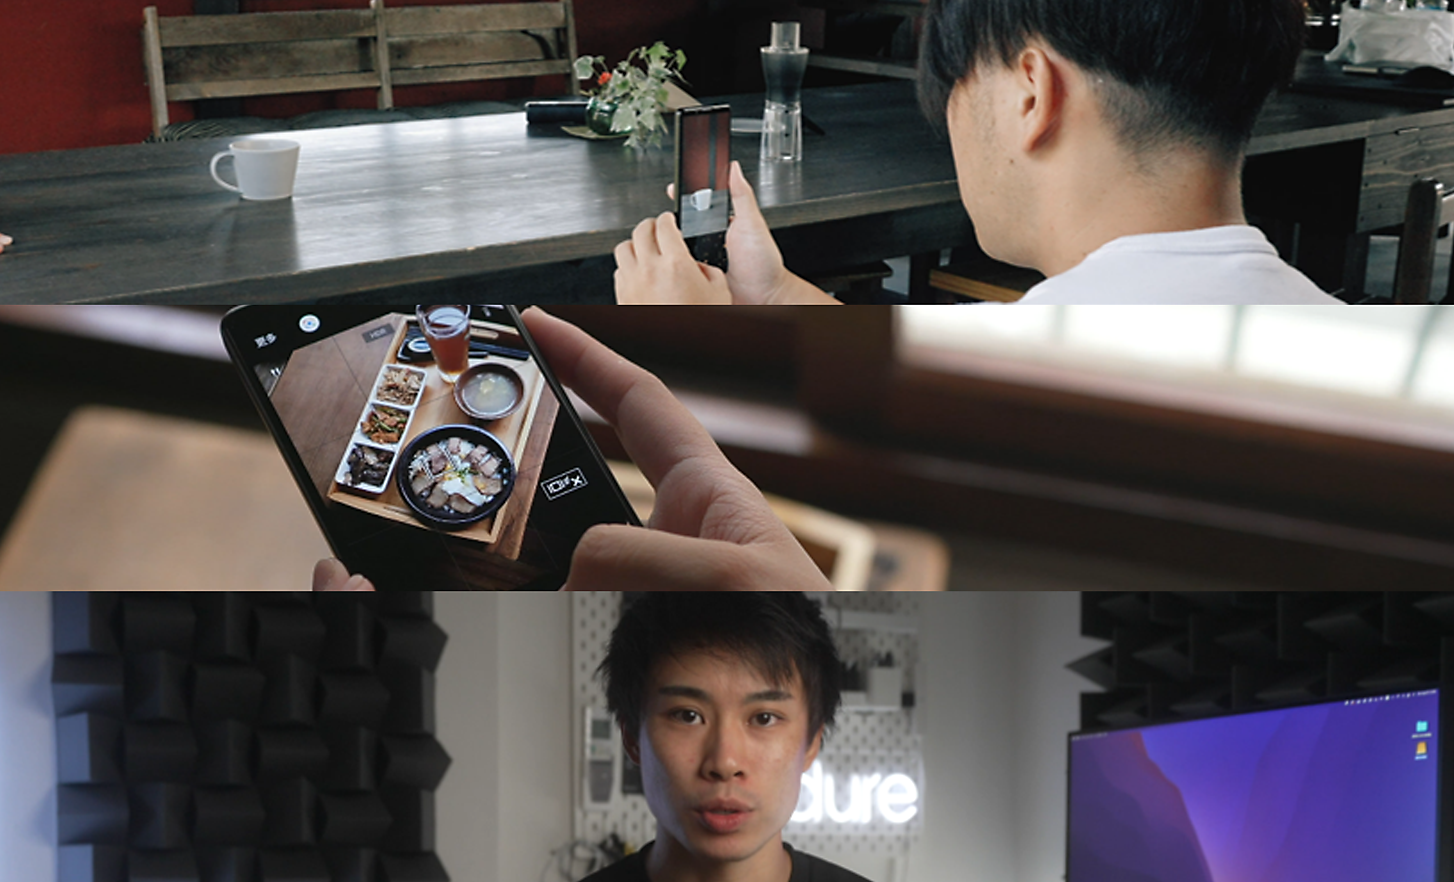 Trois images : un homme prend une photo avec un Xperia, une personne regarde une image sur un Xperia et un homme regarde directement l'appareil photo